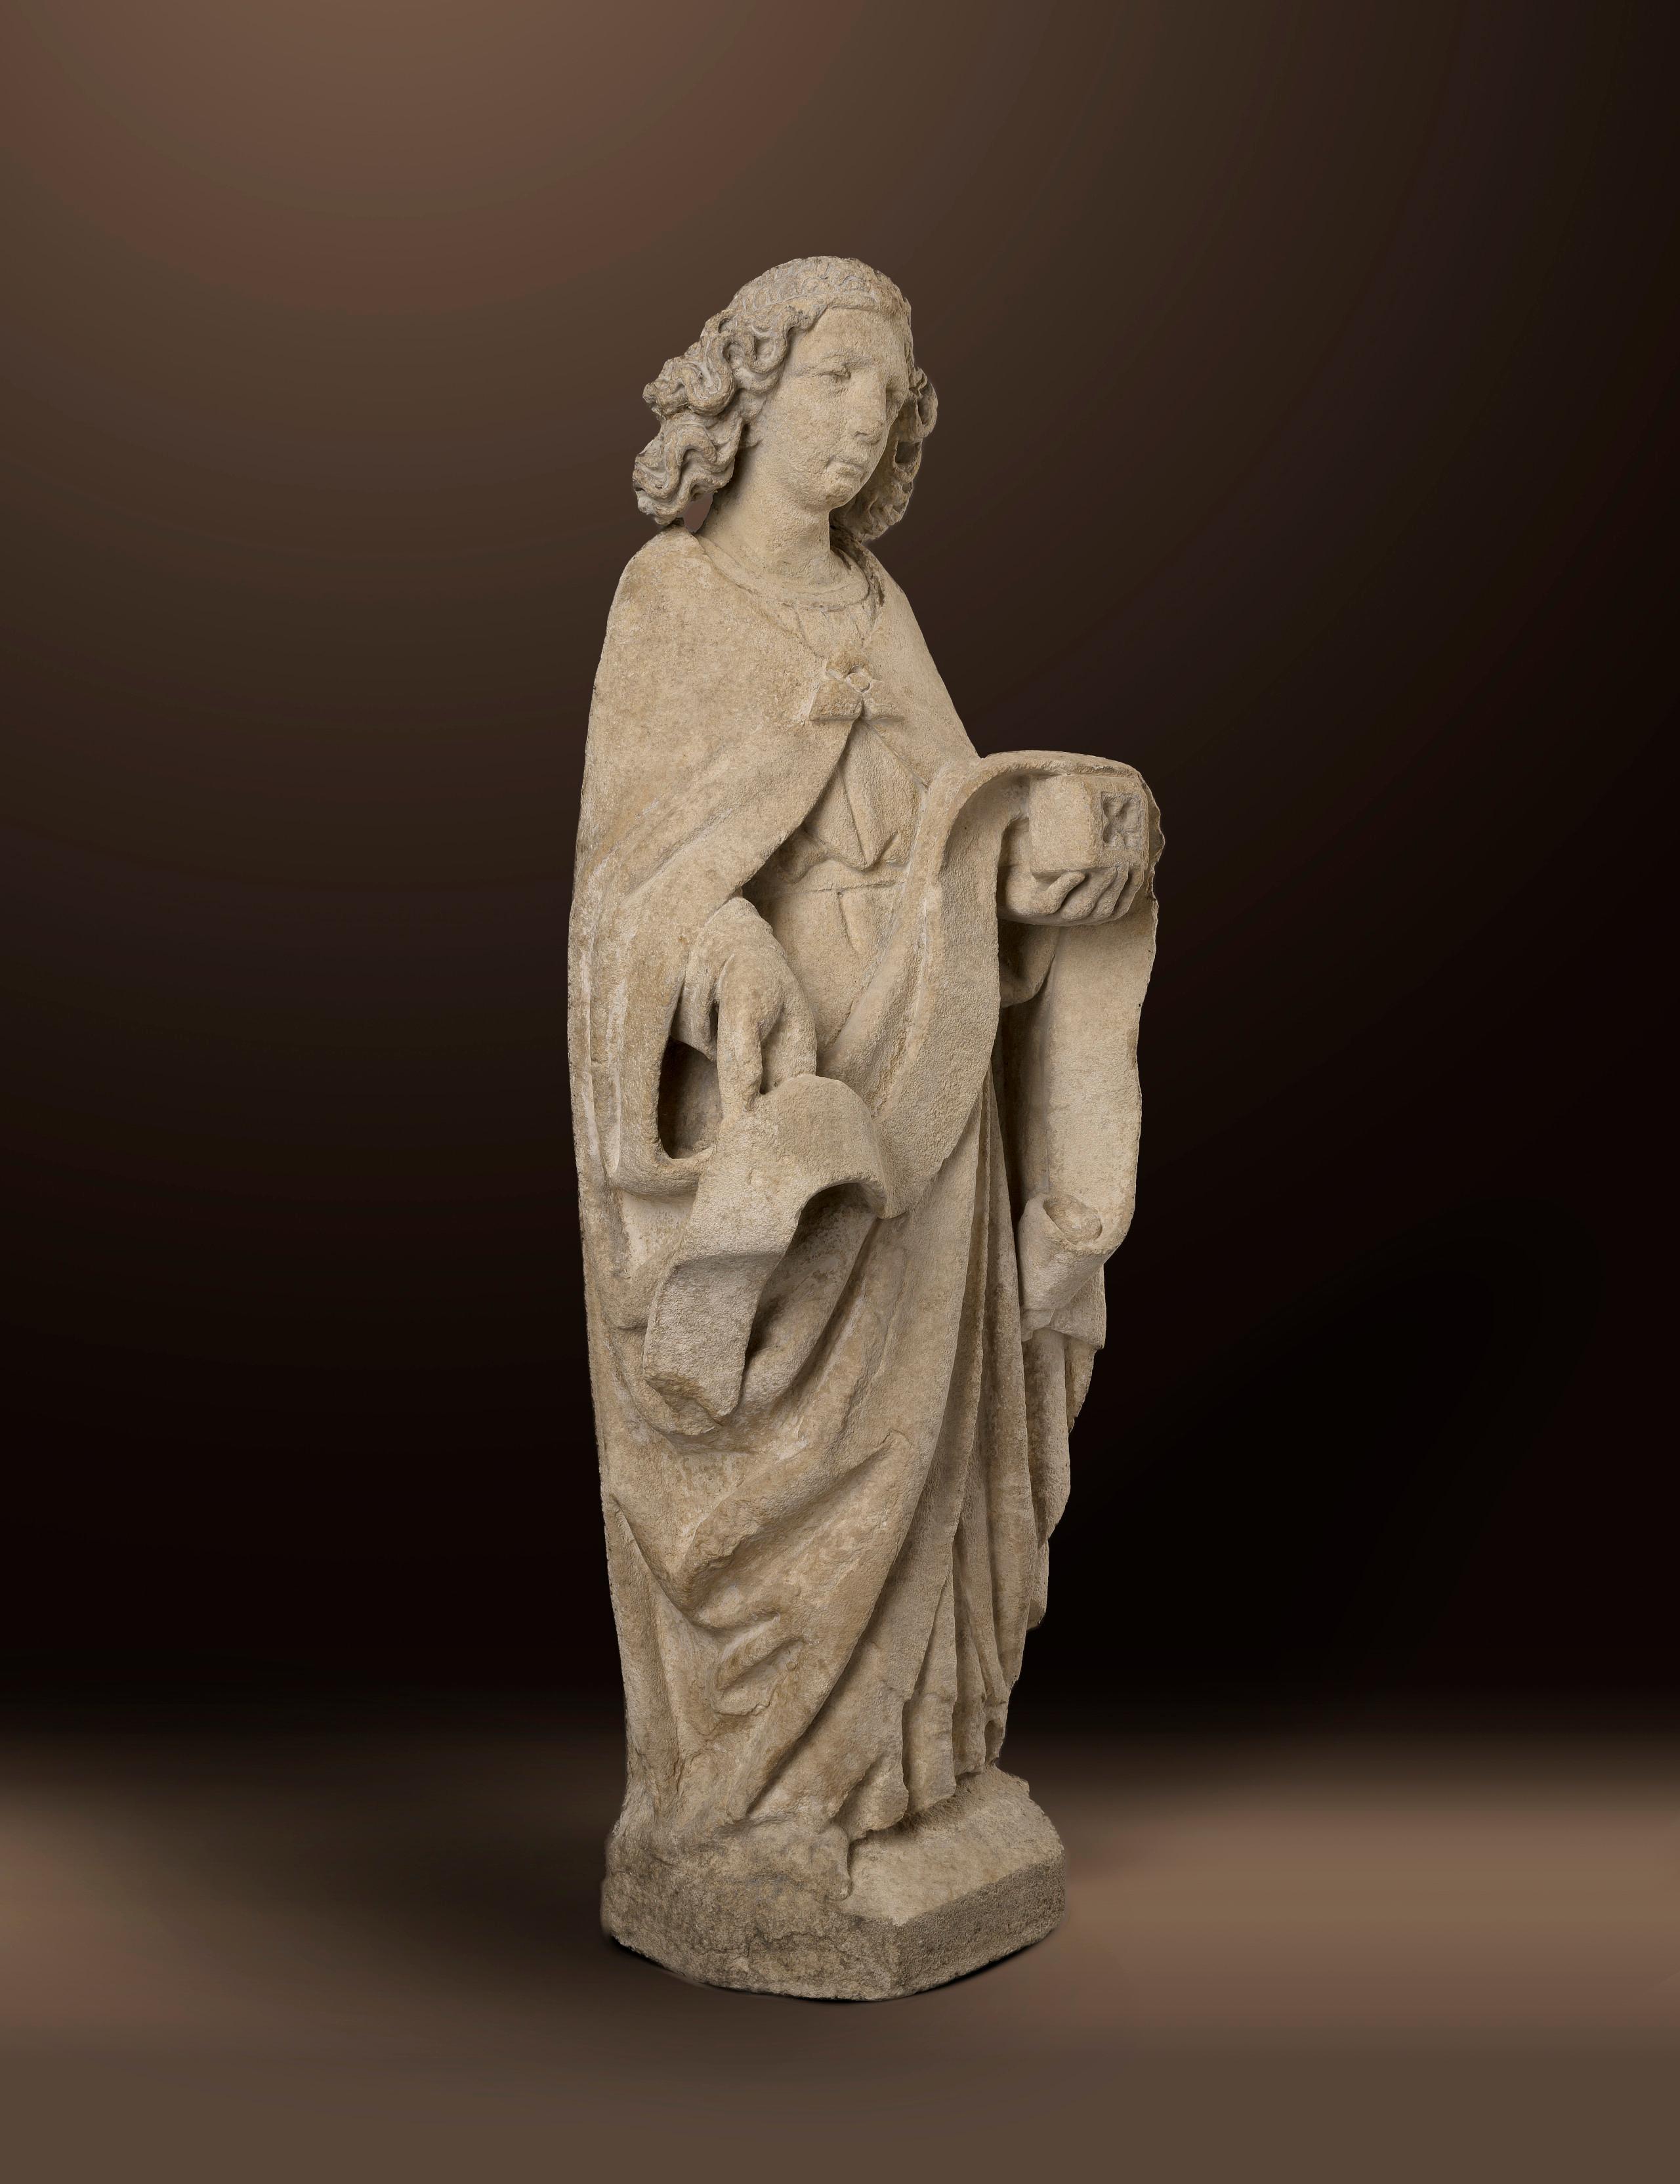 Stehender Engel mit Fahne
Flämisch
Um 1450/60

Sandstein
60 x 21 x 15 cm

Diese Museumsfigur zeigt einen stehenden Engel mit einer Fahne in der rechten und einer kleinen Schachtel in der linken Hand. Die jugendliche, alterslose Figur trägt einen